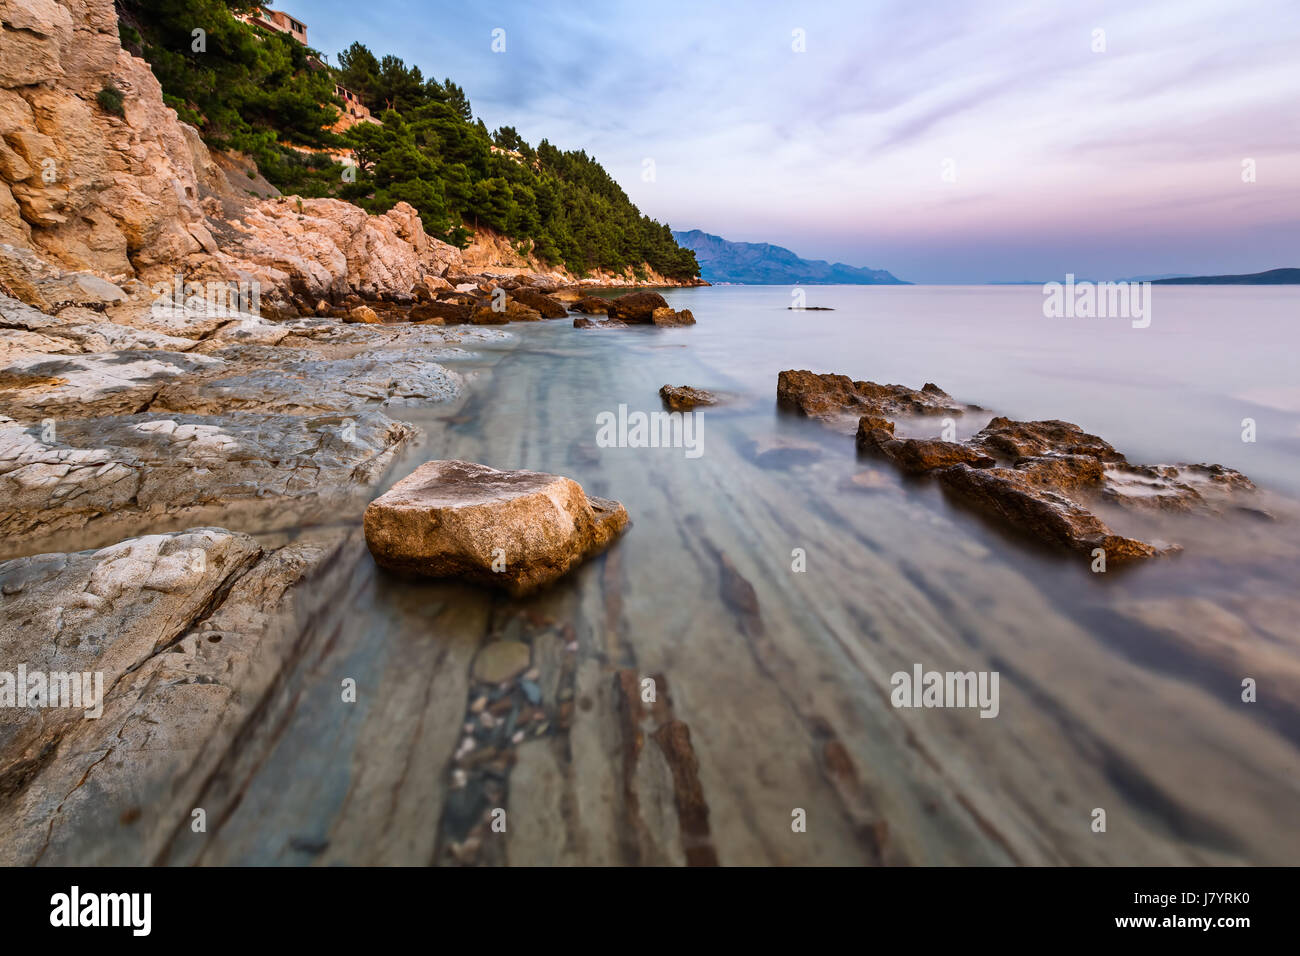 Plage de rochers et mer transparente près de omis dans la soirée, la Dalmatie, Croatie Banque D'Images